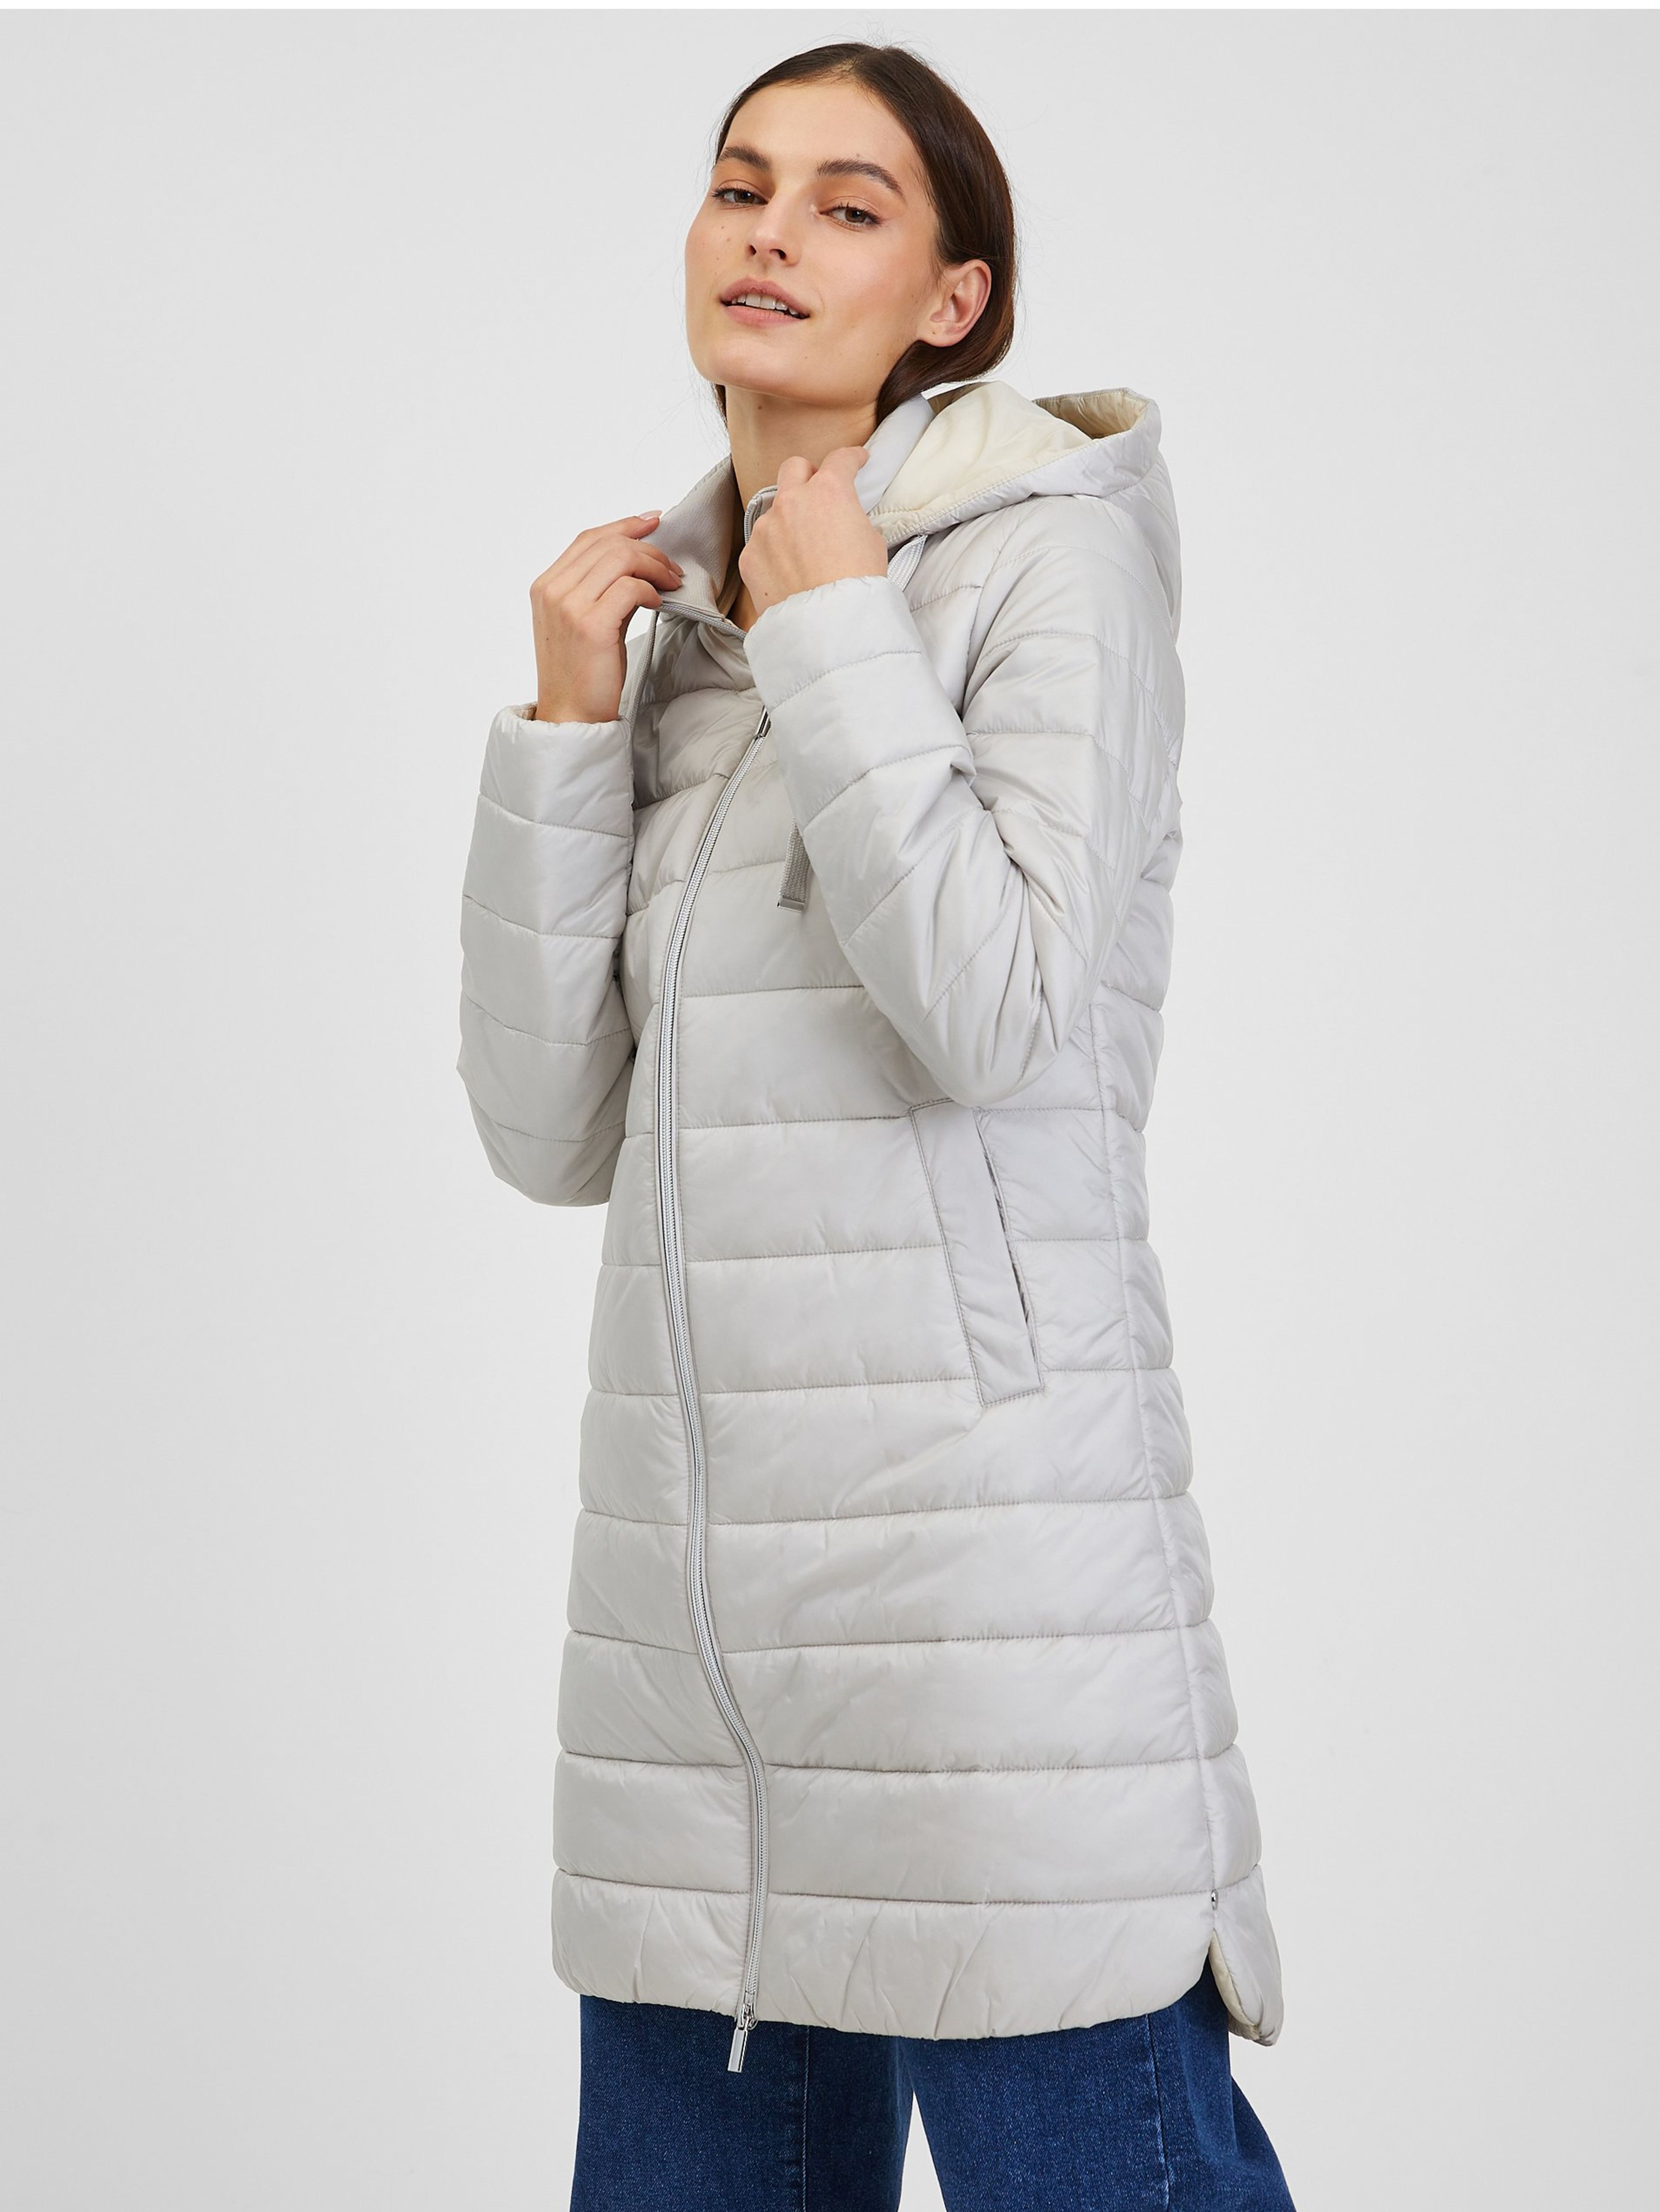 Svetlomodrý dámsky zimný prešívaný kabát ORSAY